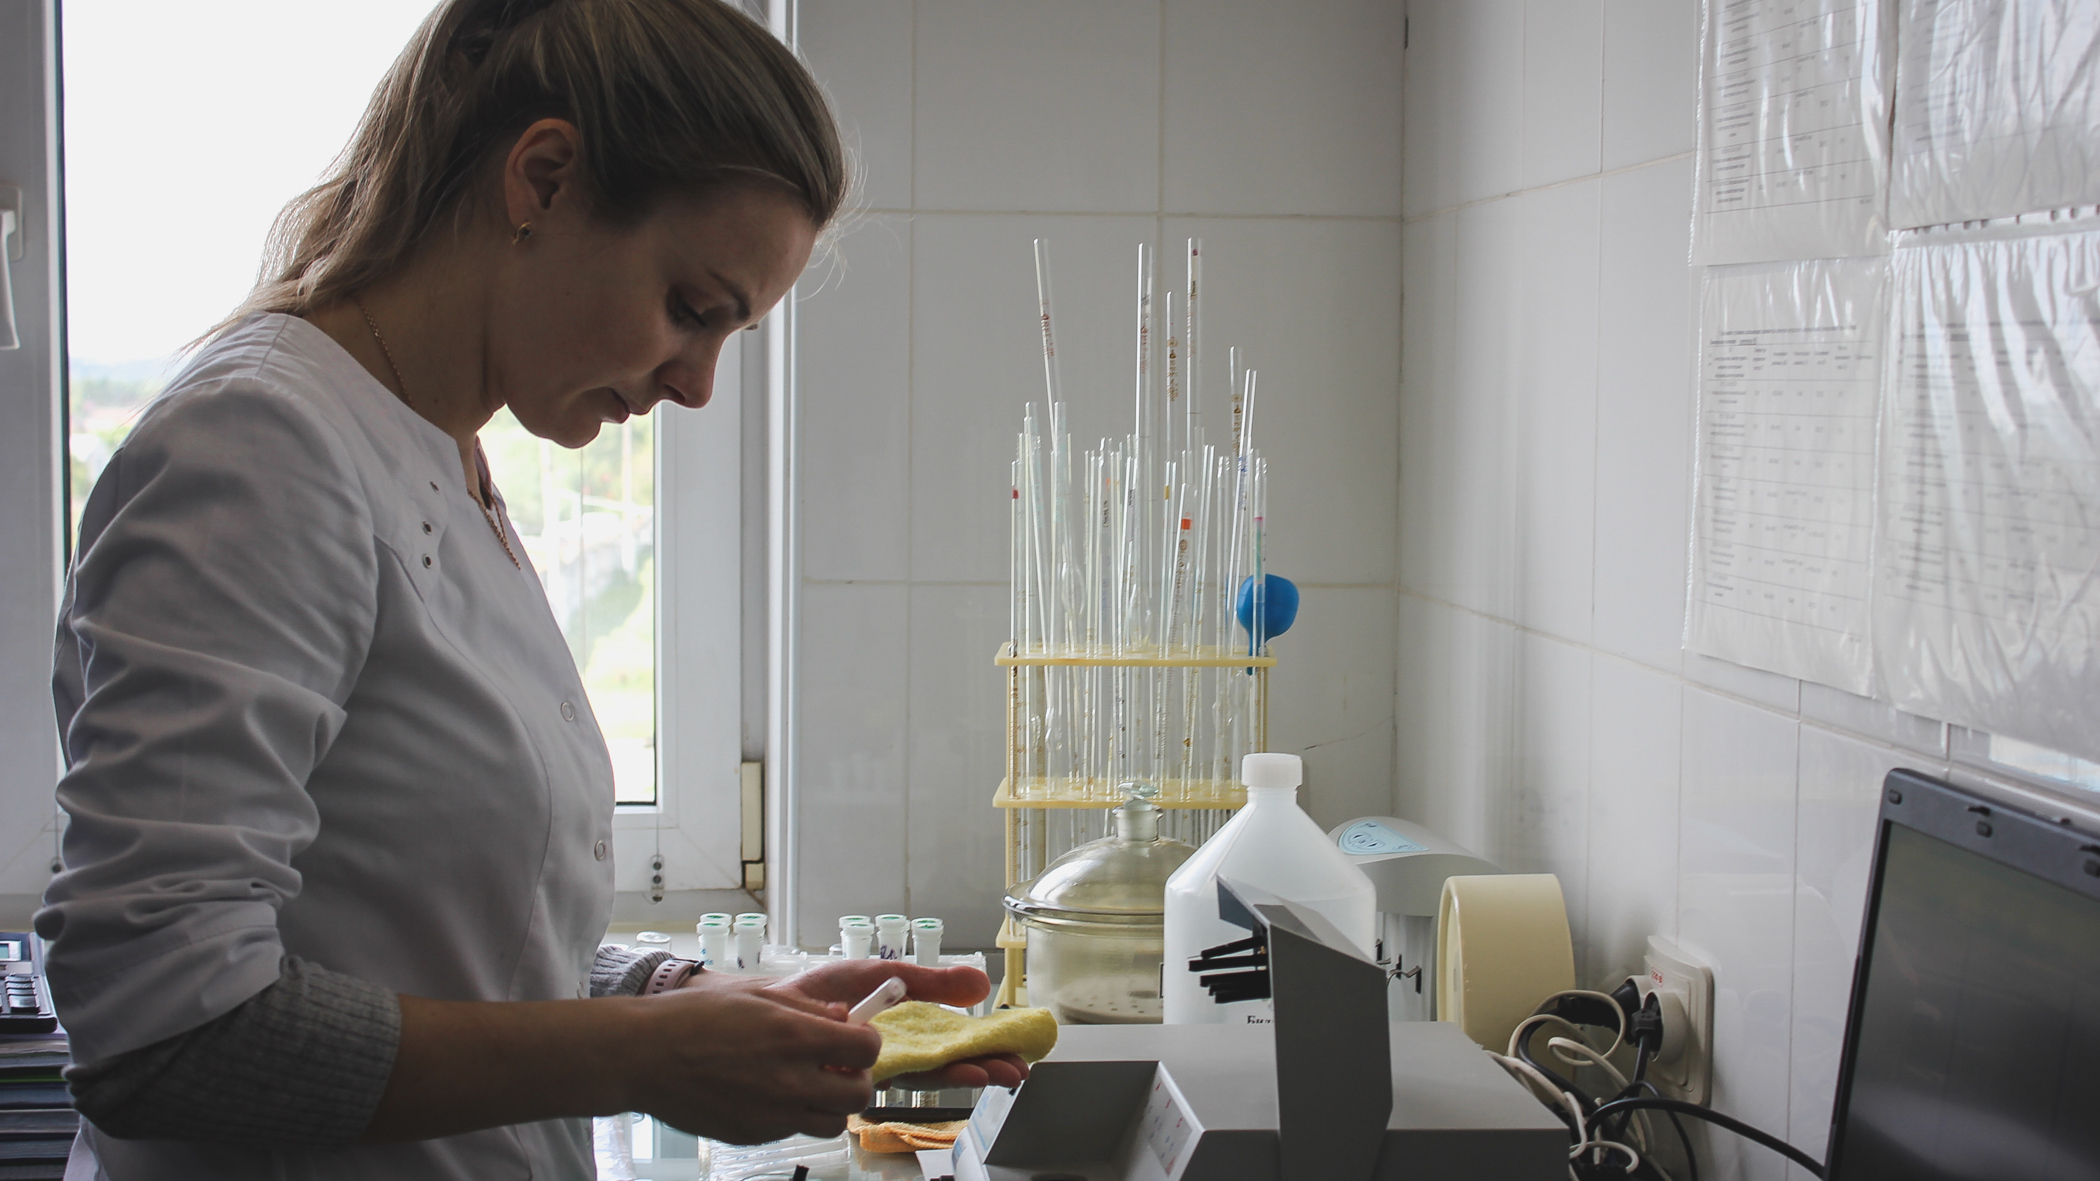 Микробов в тарелке вырастили в баклаборатории 1 РКБ в Ижевске к 100-летию больницы